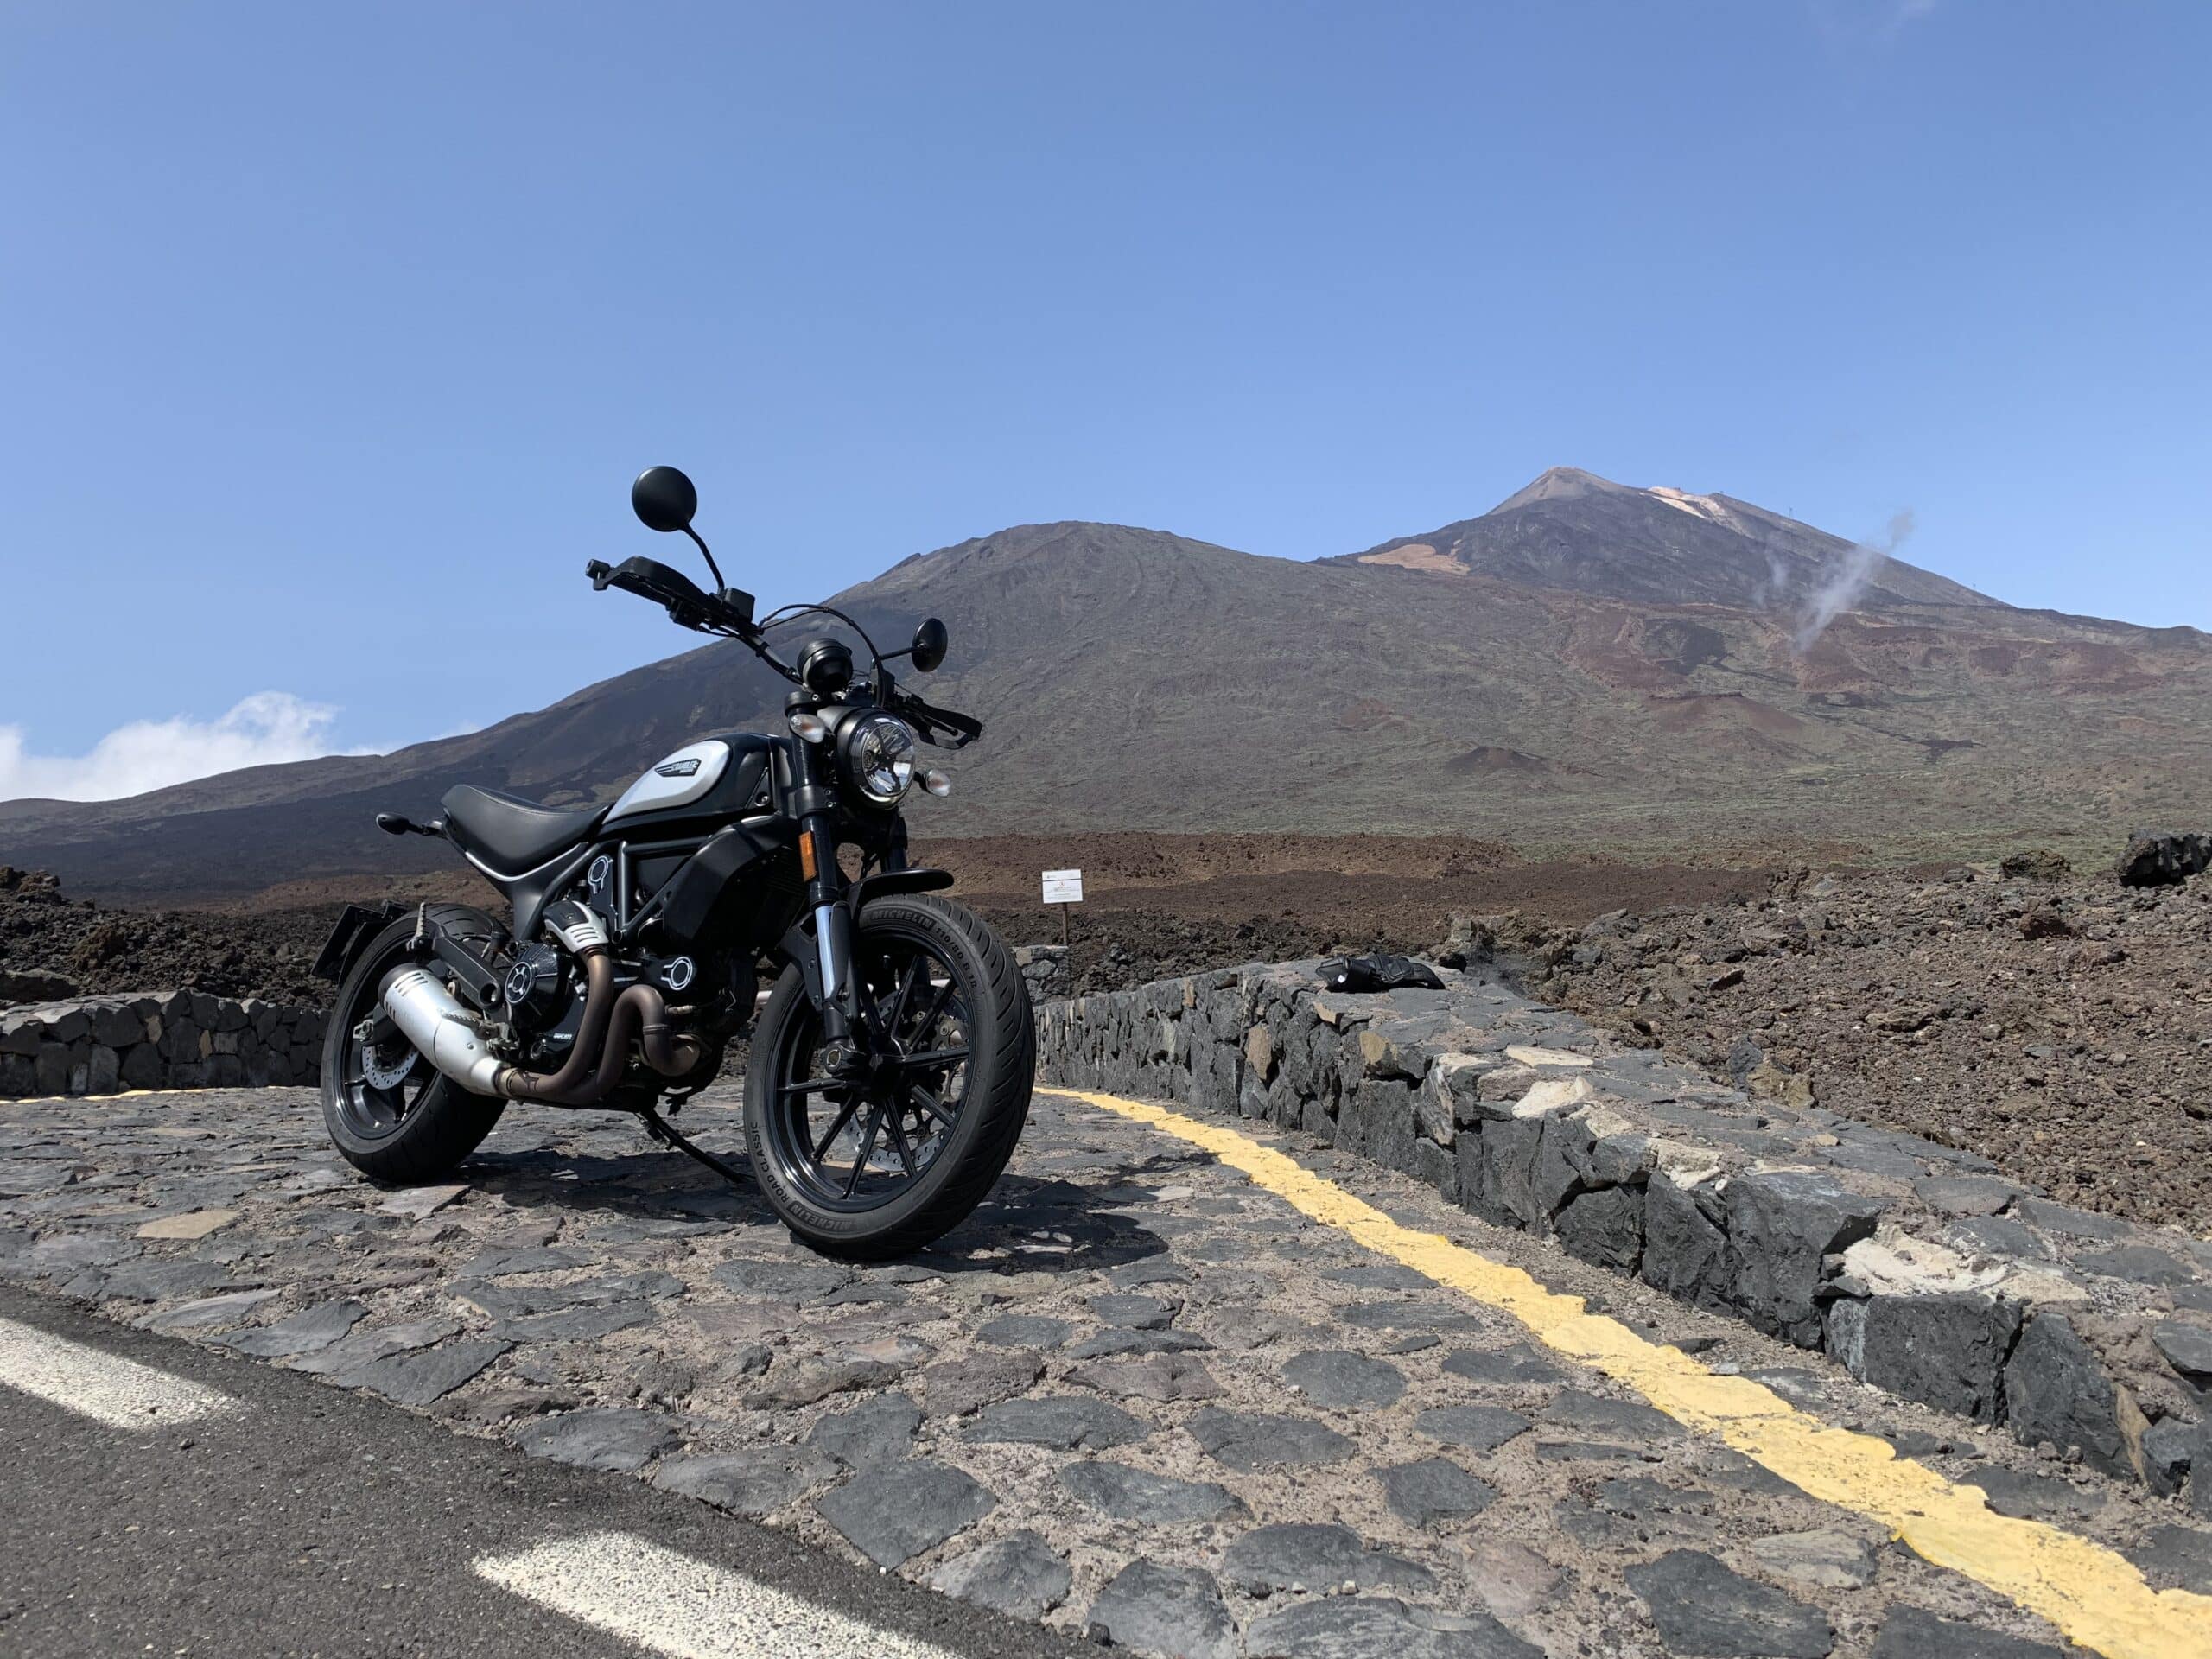 Ne pas recevoir d'amende - comment garer correctement sa moto dans les îles Canaries